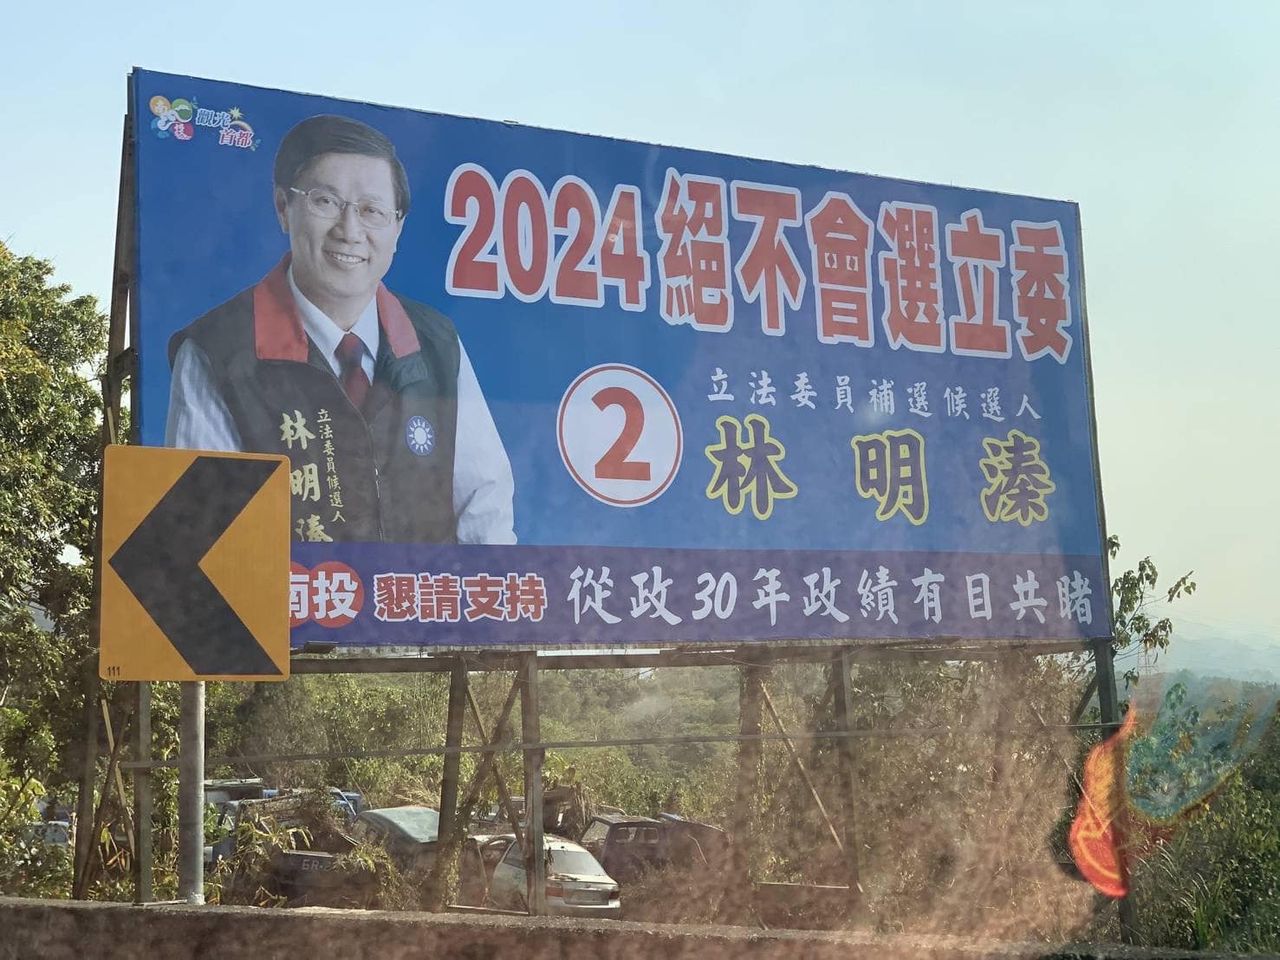 林明溱掛看板「絕不選2024」　民進黨：史上最荒謬 | ETtoday政